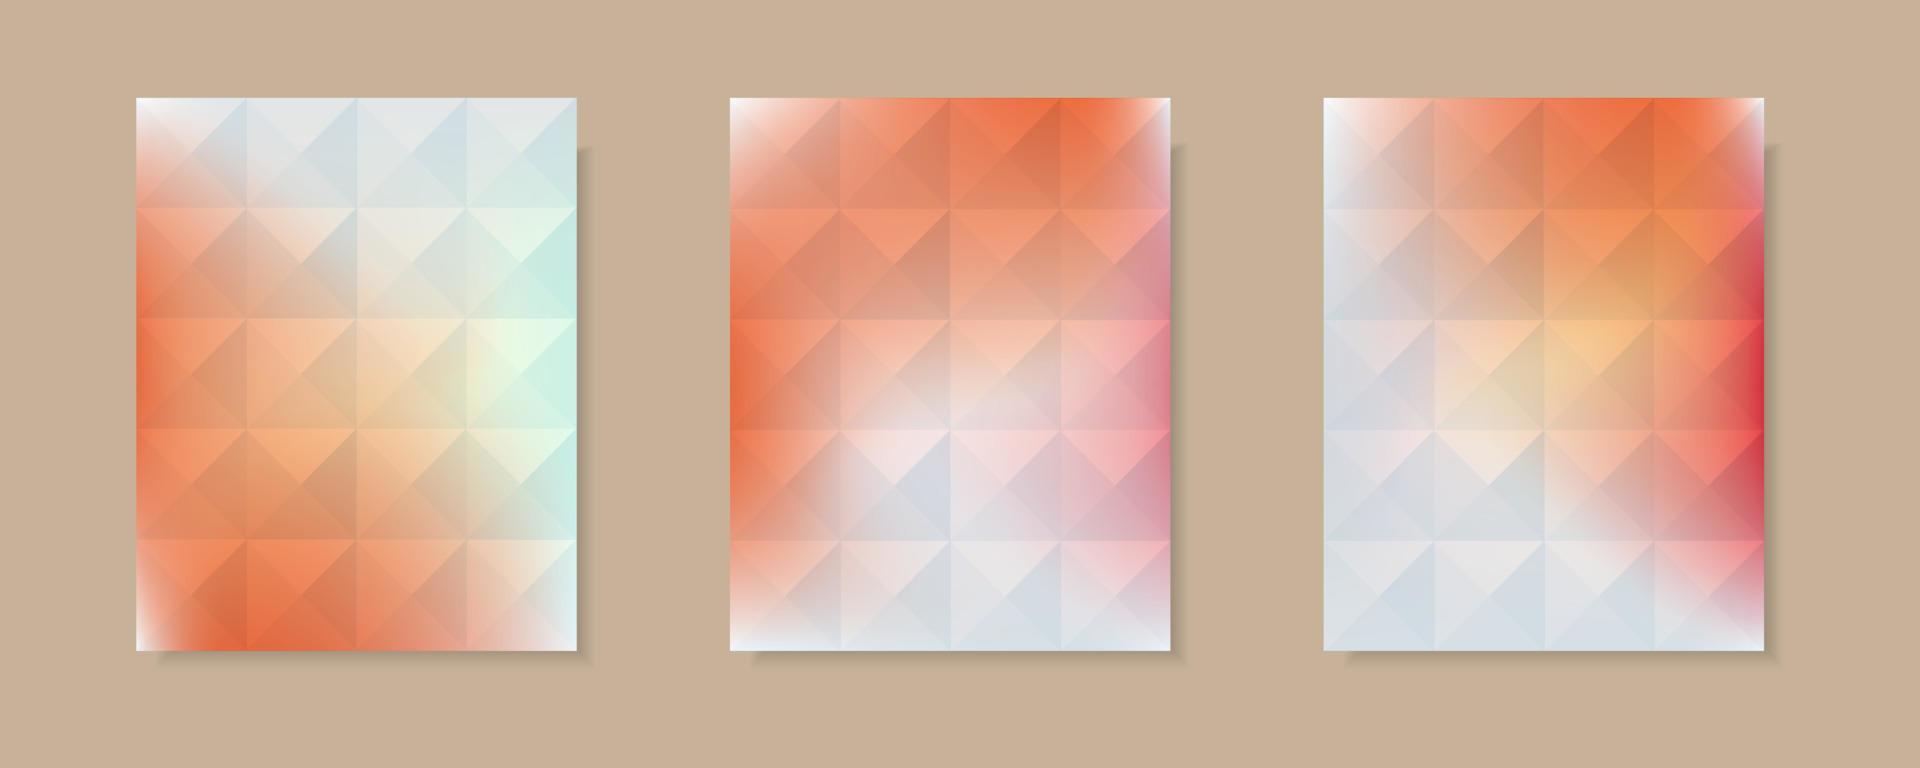 verzameling van abstracte oranje witte kleurverloop vector dekking achtergronden. driehoekspatroonontwerp met kristalvormstijl. voor zakelijke brochureachtergronden, posters en grafische ontwerpen.